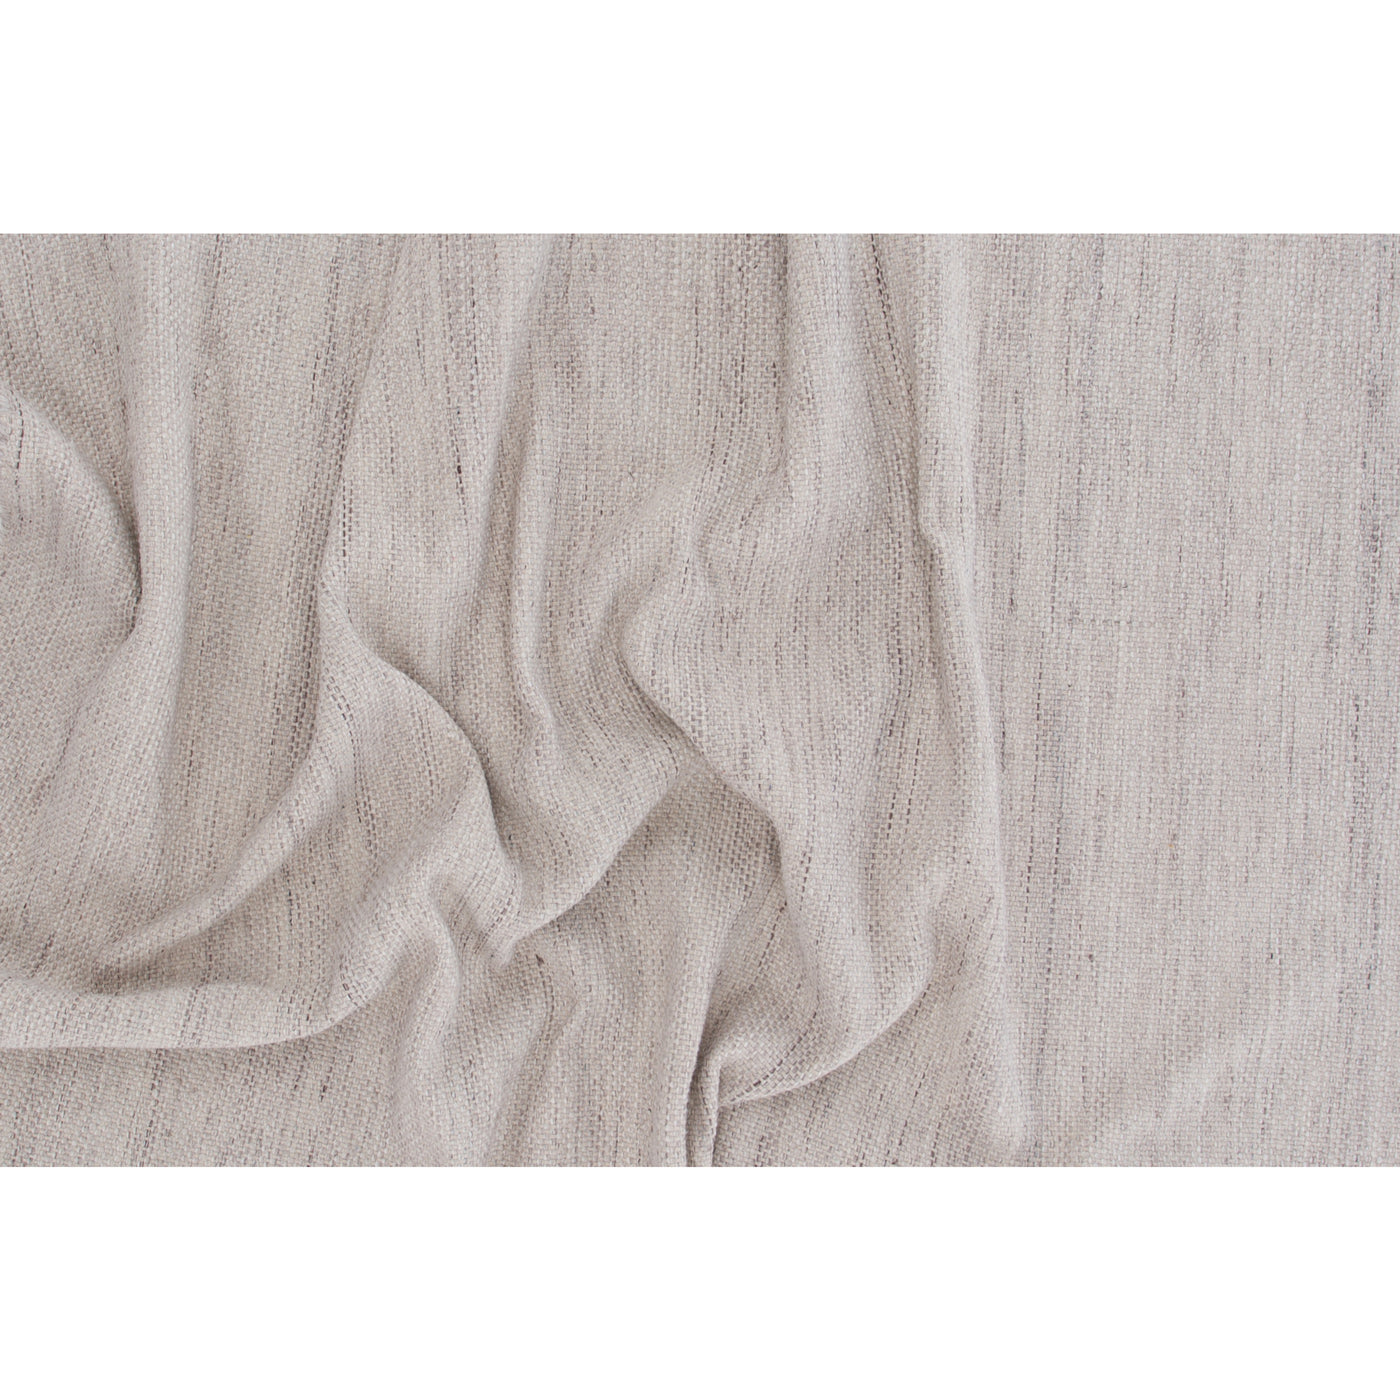 Euphemia-Teppich – 200 x 300 cm – Beige